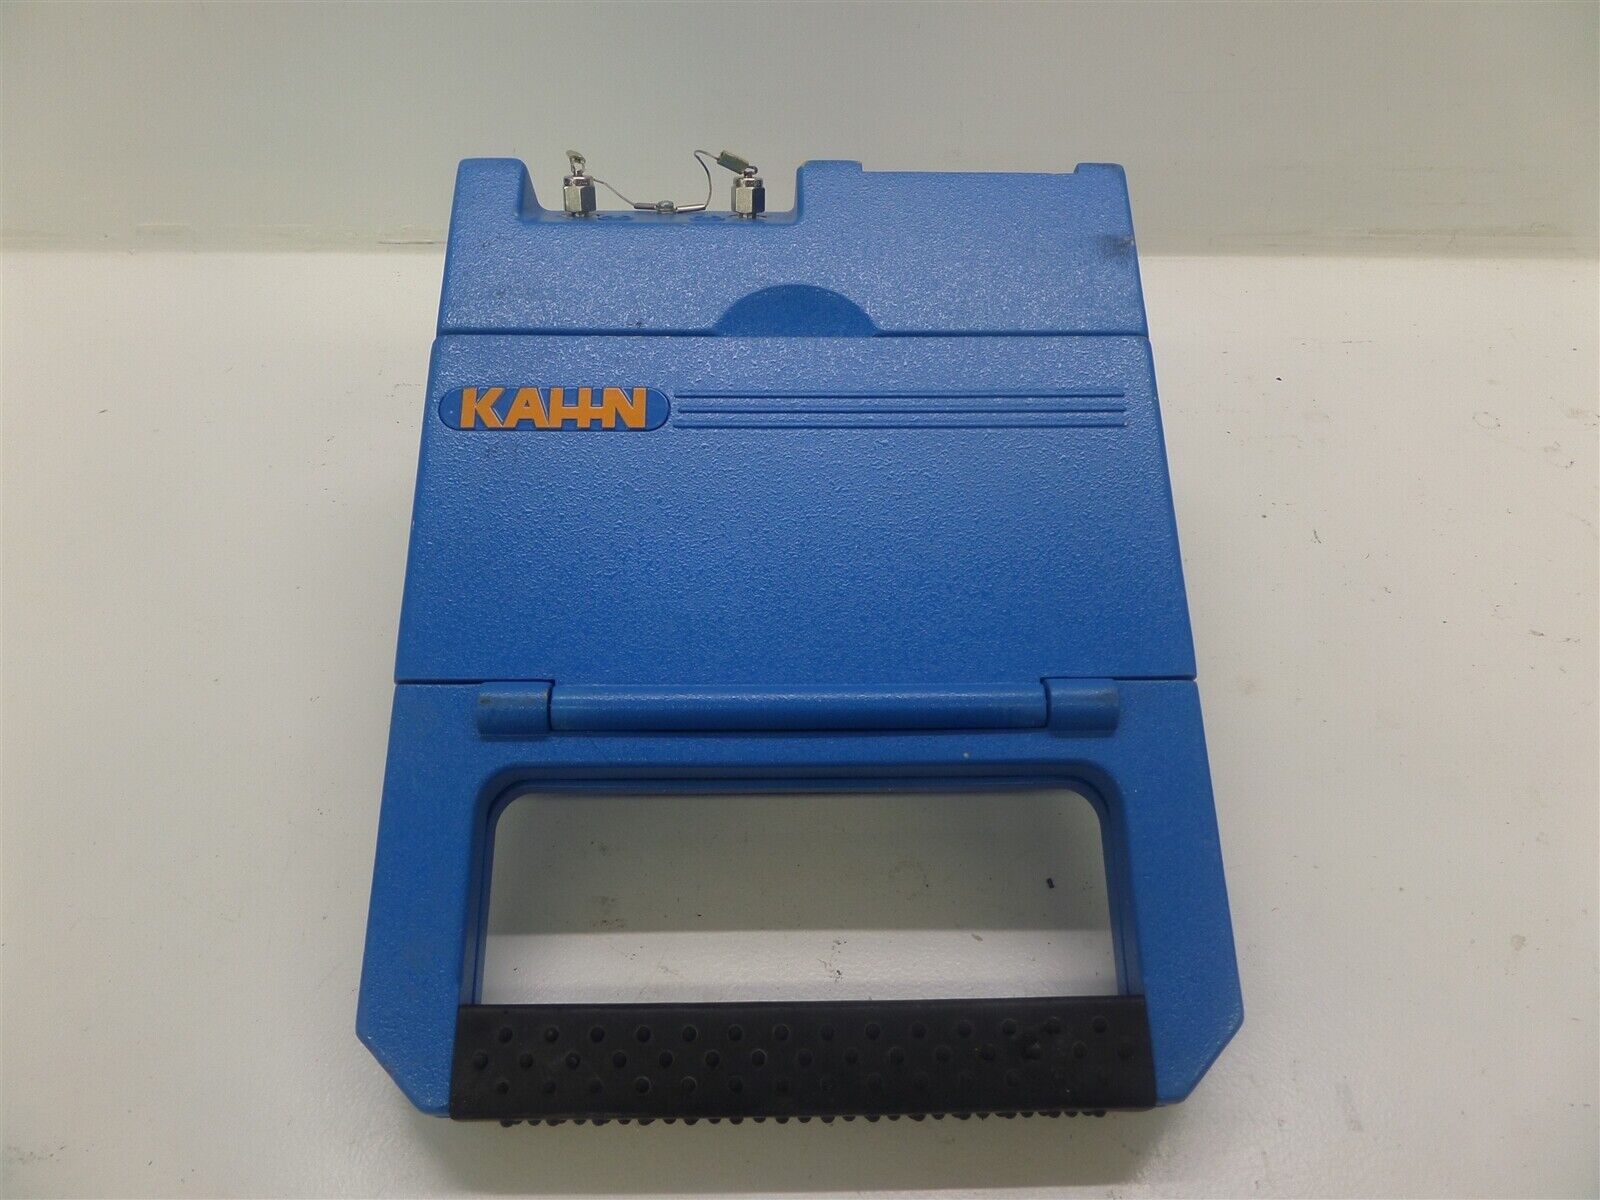 Kahn Cermax Portable Hygrometer Dewpoint Meter 75-4207